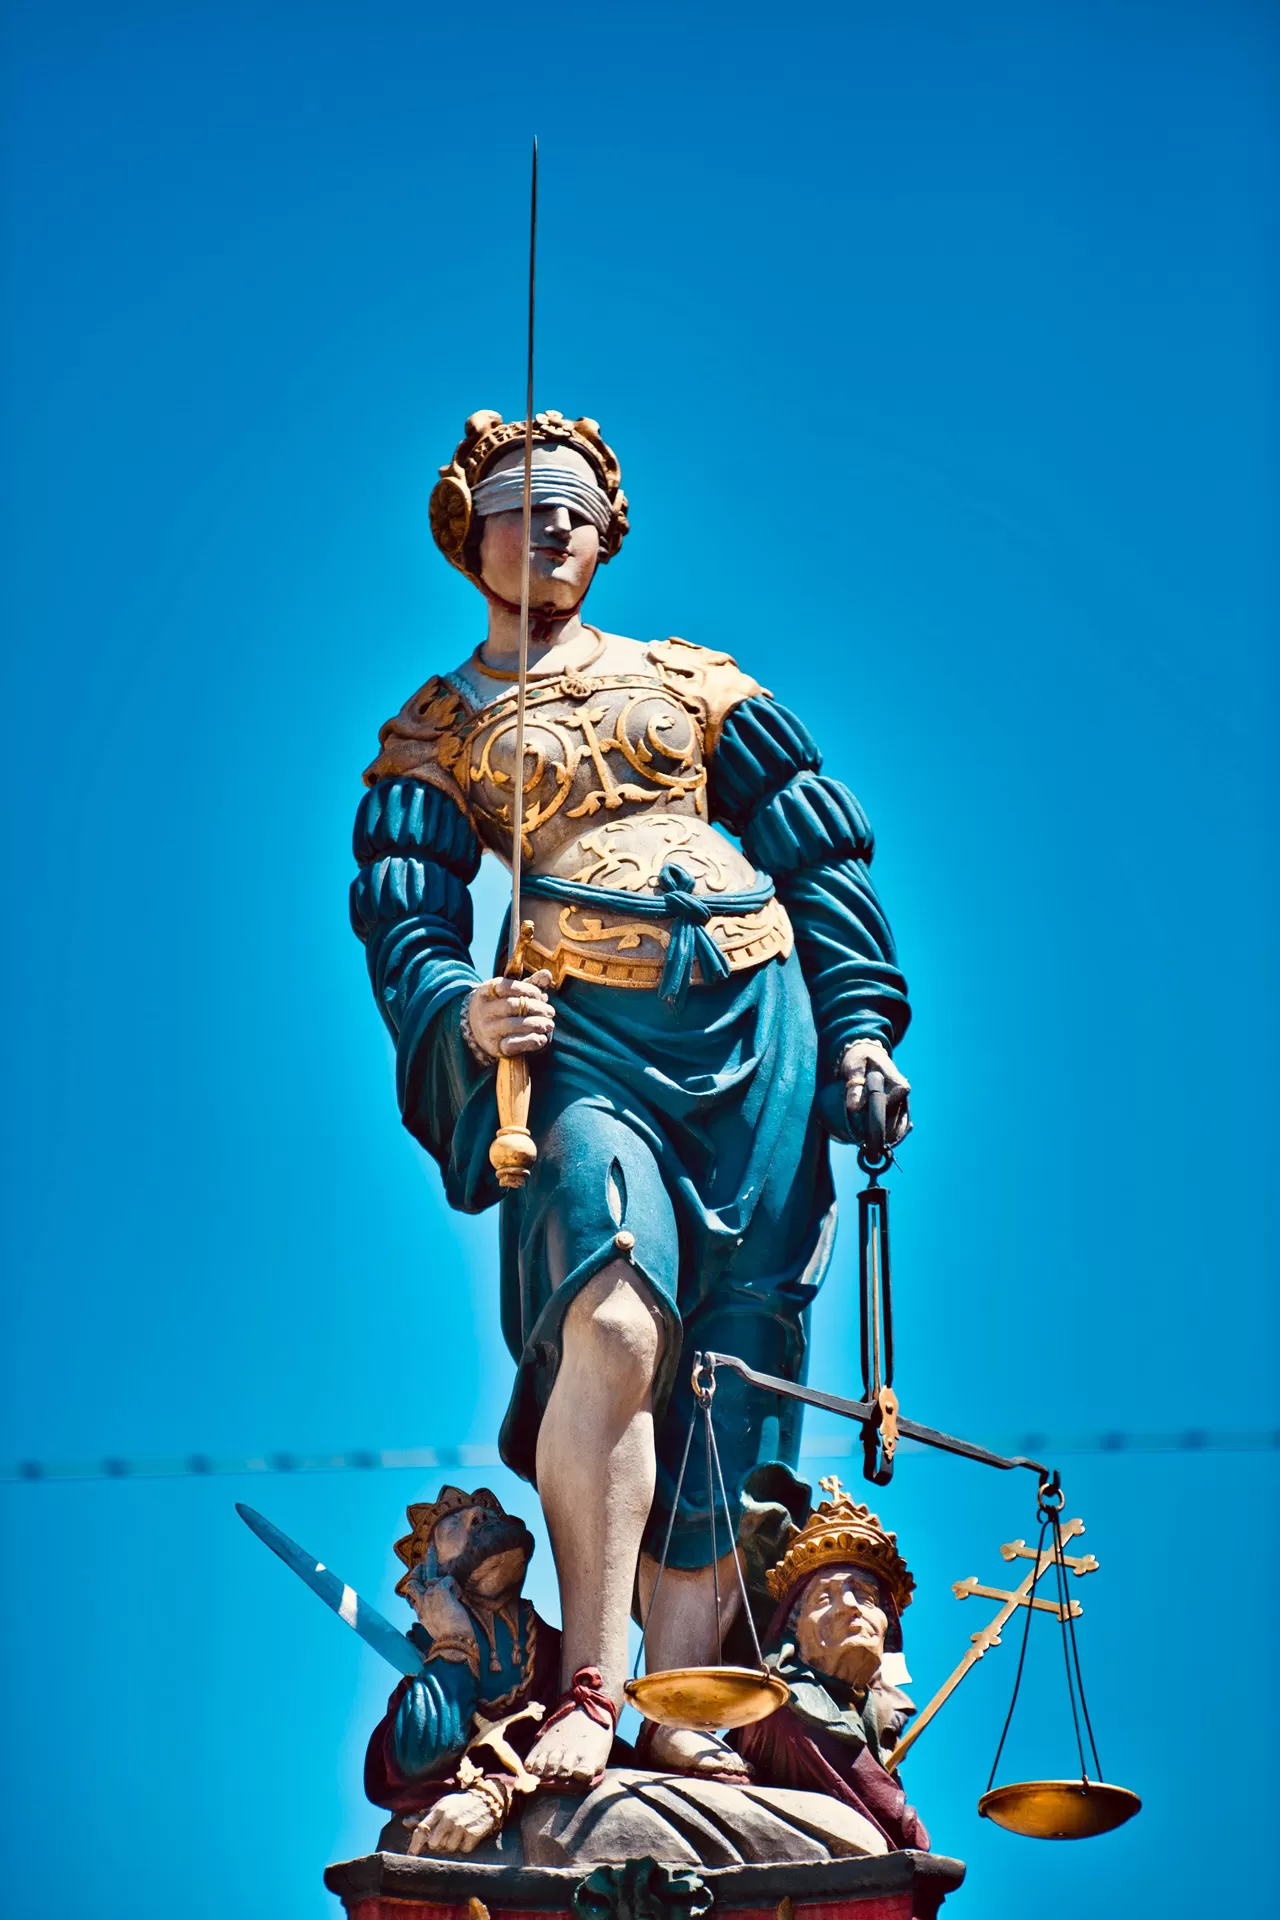 Eine Statue der Justizia in blauem Gewand und mit goldener Rüstung steht auf dem Gerechtigkeitsbrunnen in Bern. In den Händen hält sie Schwert und Waage, die Augen sind verbunden.